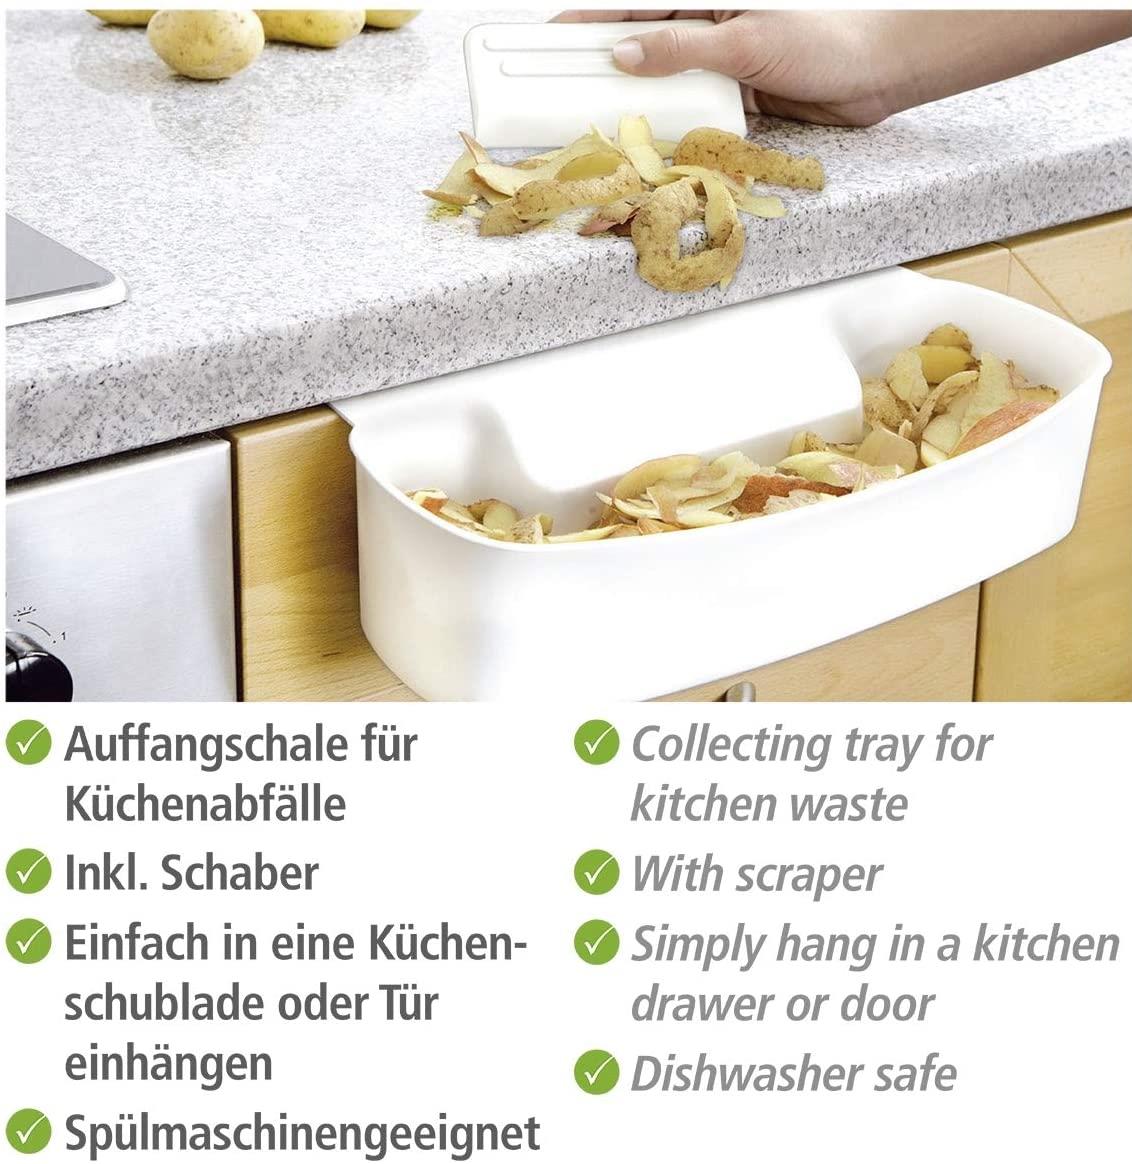 Auffangschale für Küchenabfälle, Abfallbehälter für Bio-Abfall in der Küche, zum Einhängen, Kunststoff, 32,4 x 17,3 x 9,2 cm, weiß